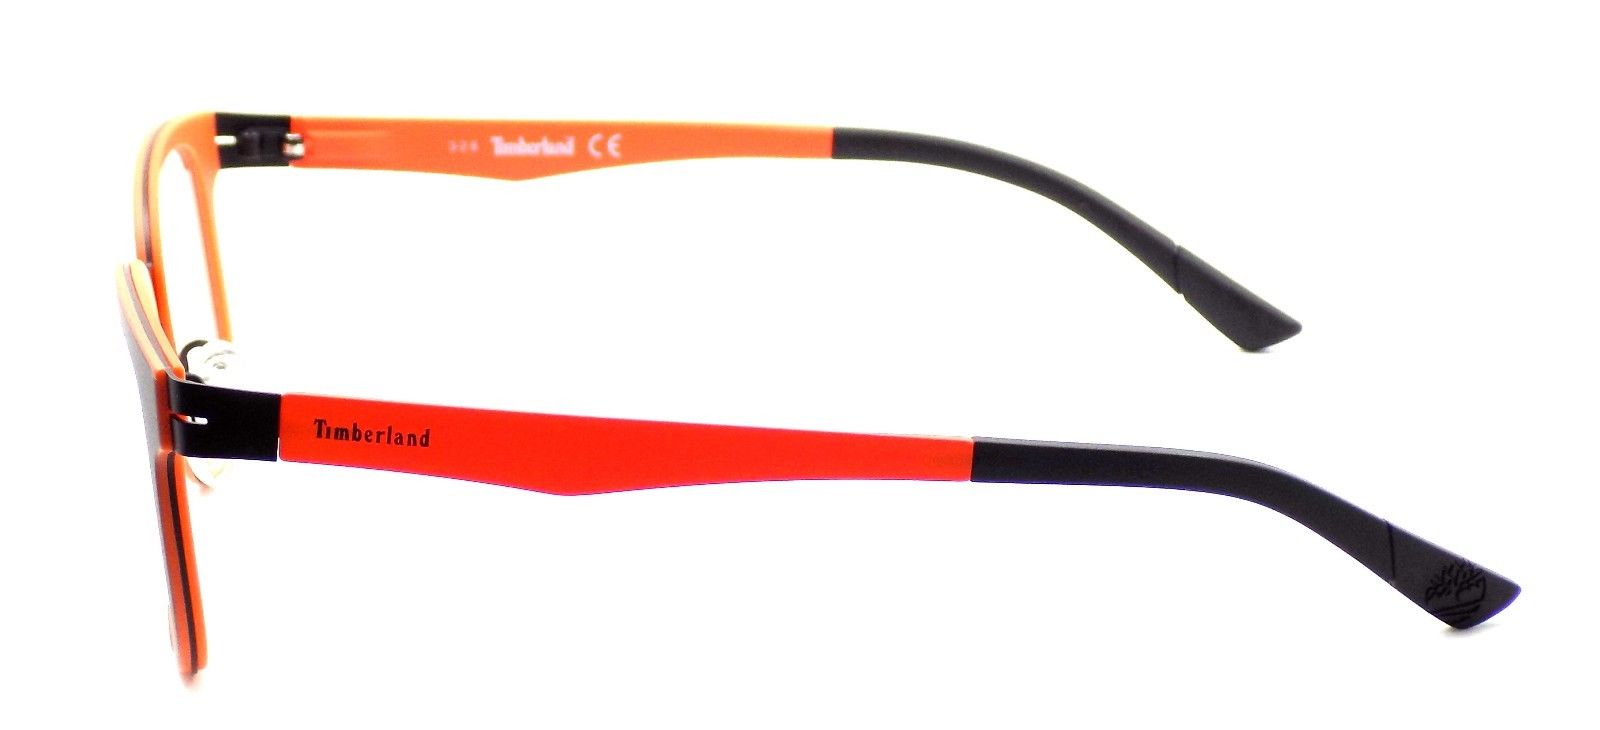 3-TIMBERLAND TB1353 005 Men's FLEXIBLE Eyeglasses Frames 51-20-140 Black + CASE-664689771615-IKSpecs